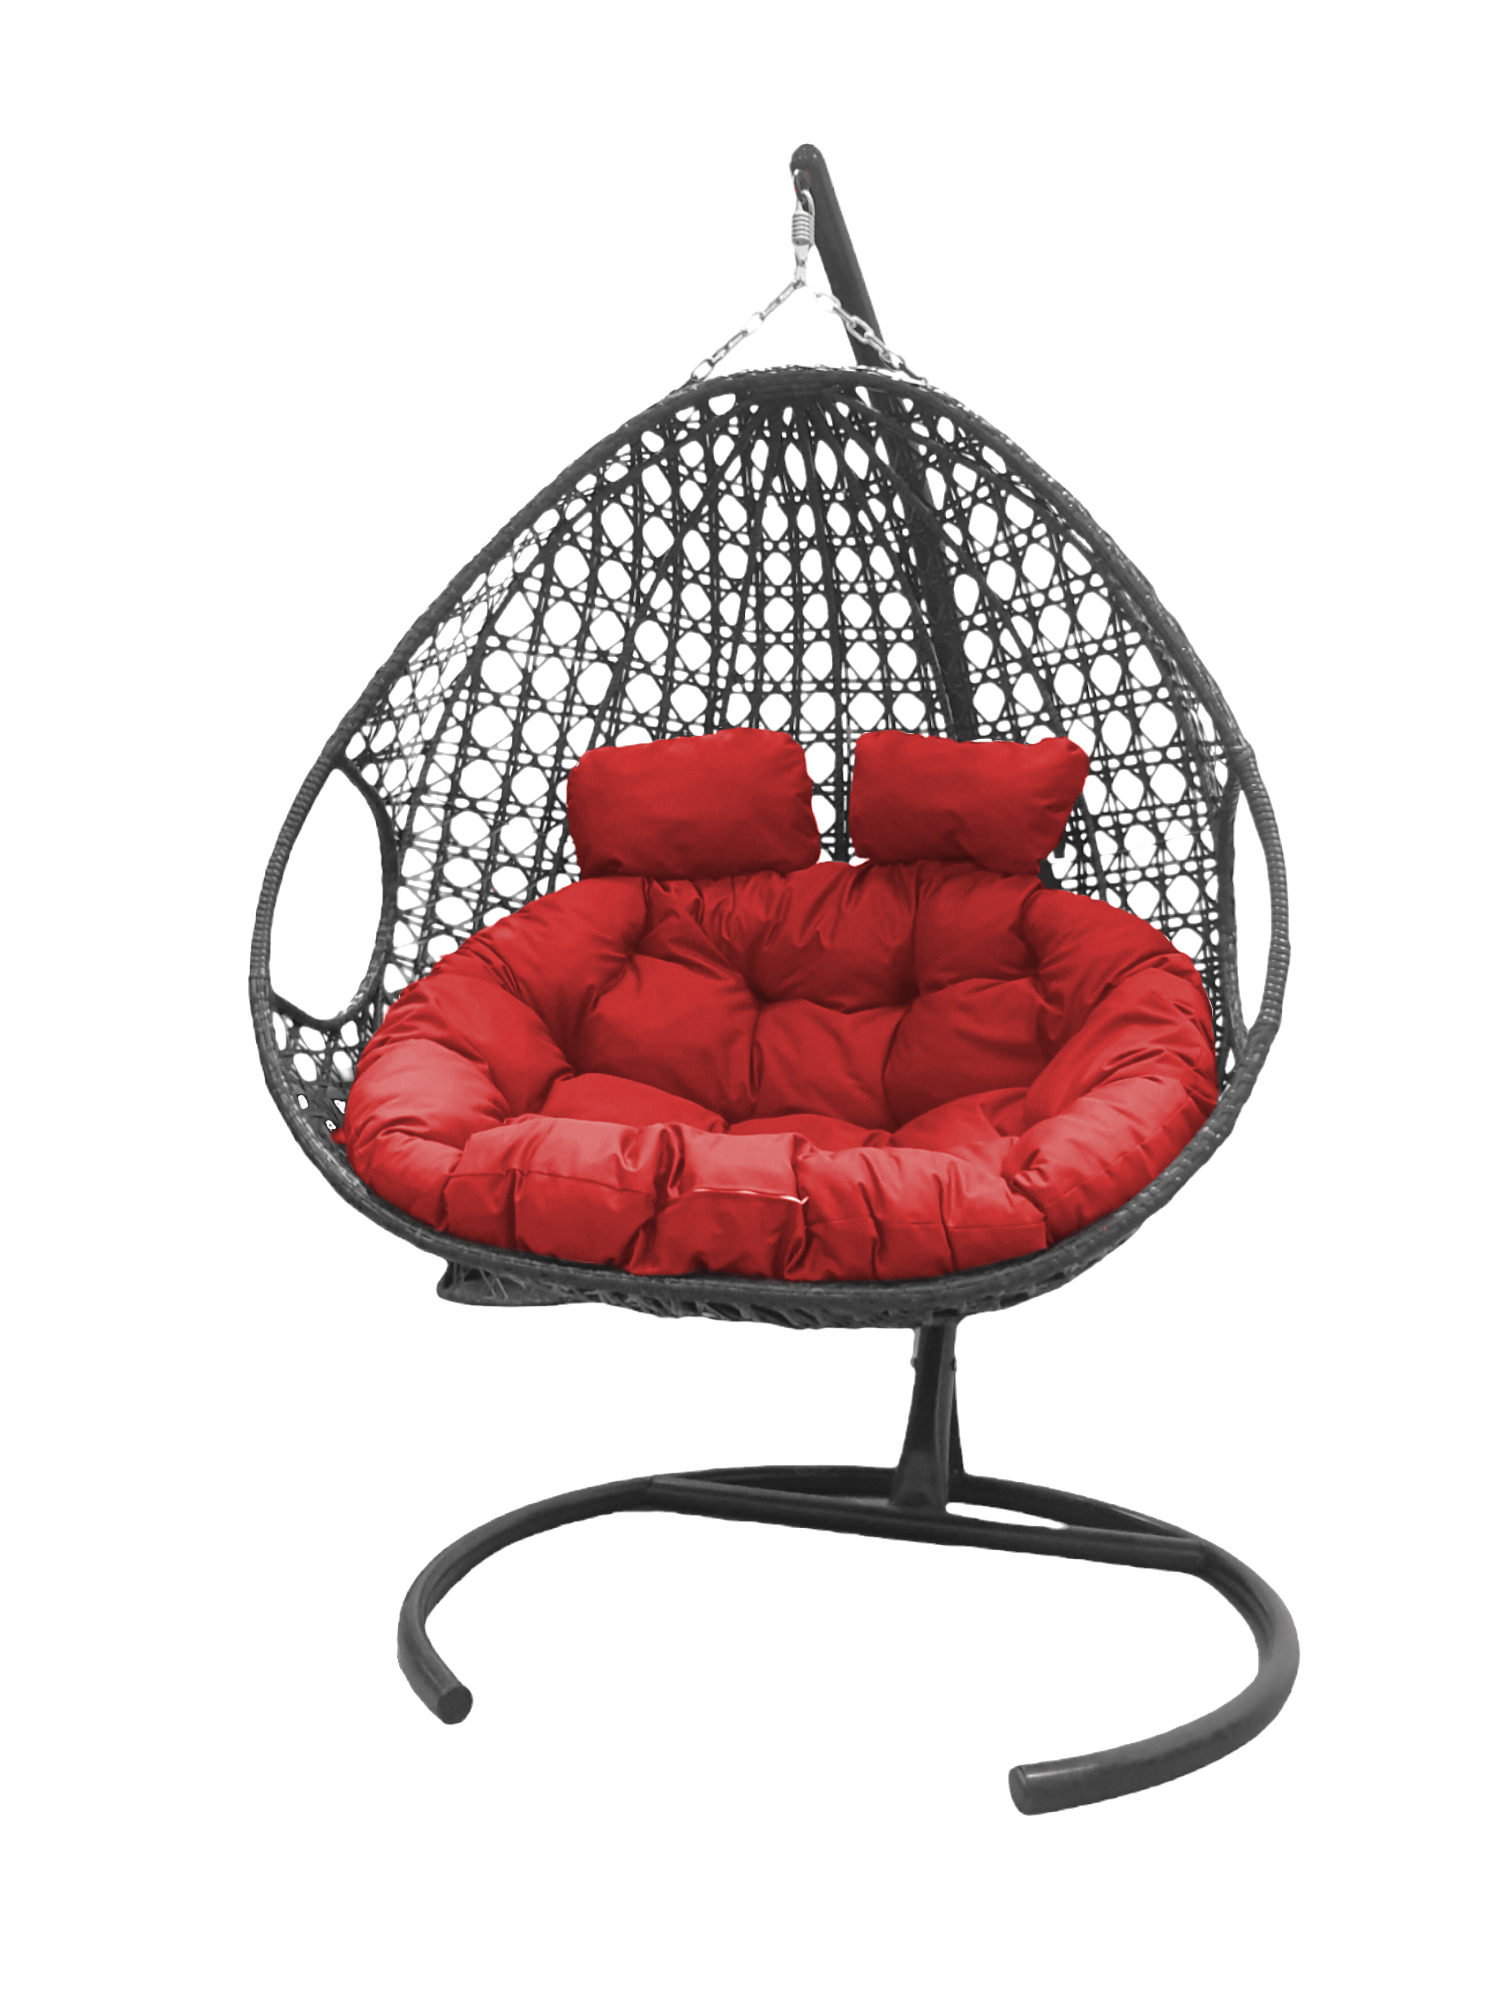 фото Подвесное кресло серый m-group для двоих люкс 11510306 красная подушка